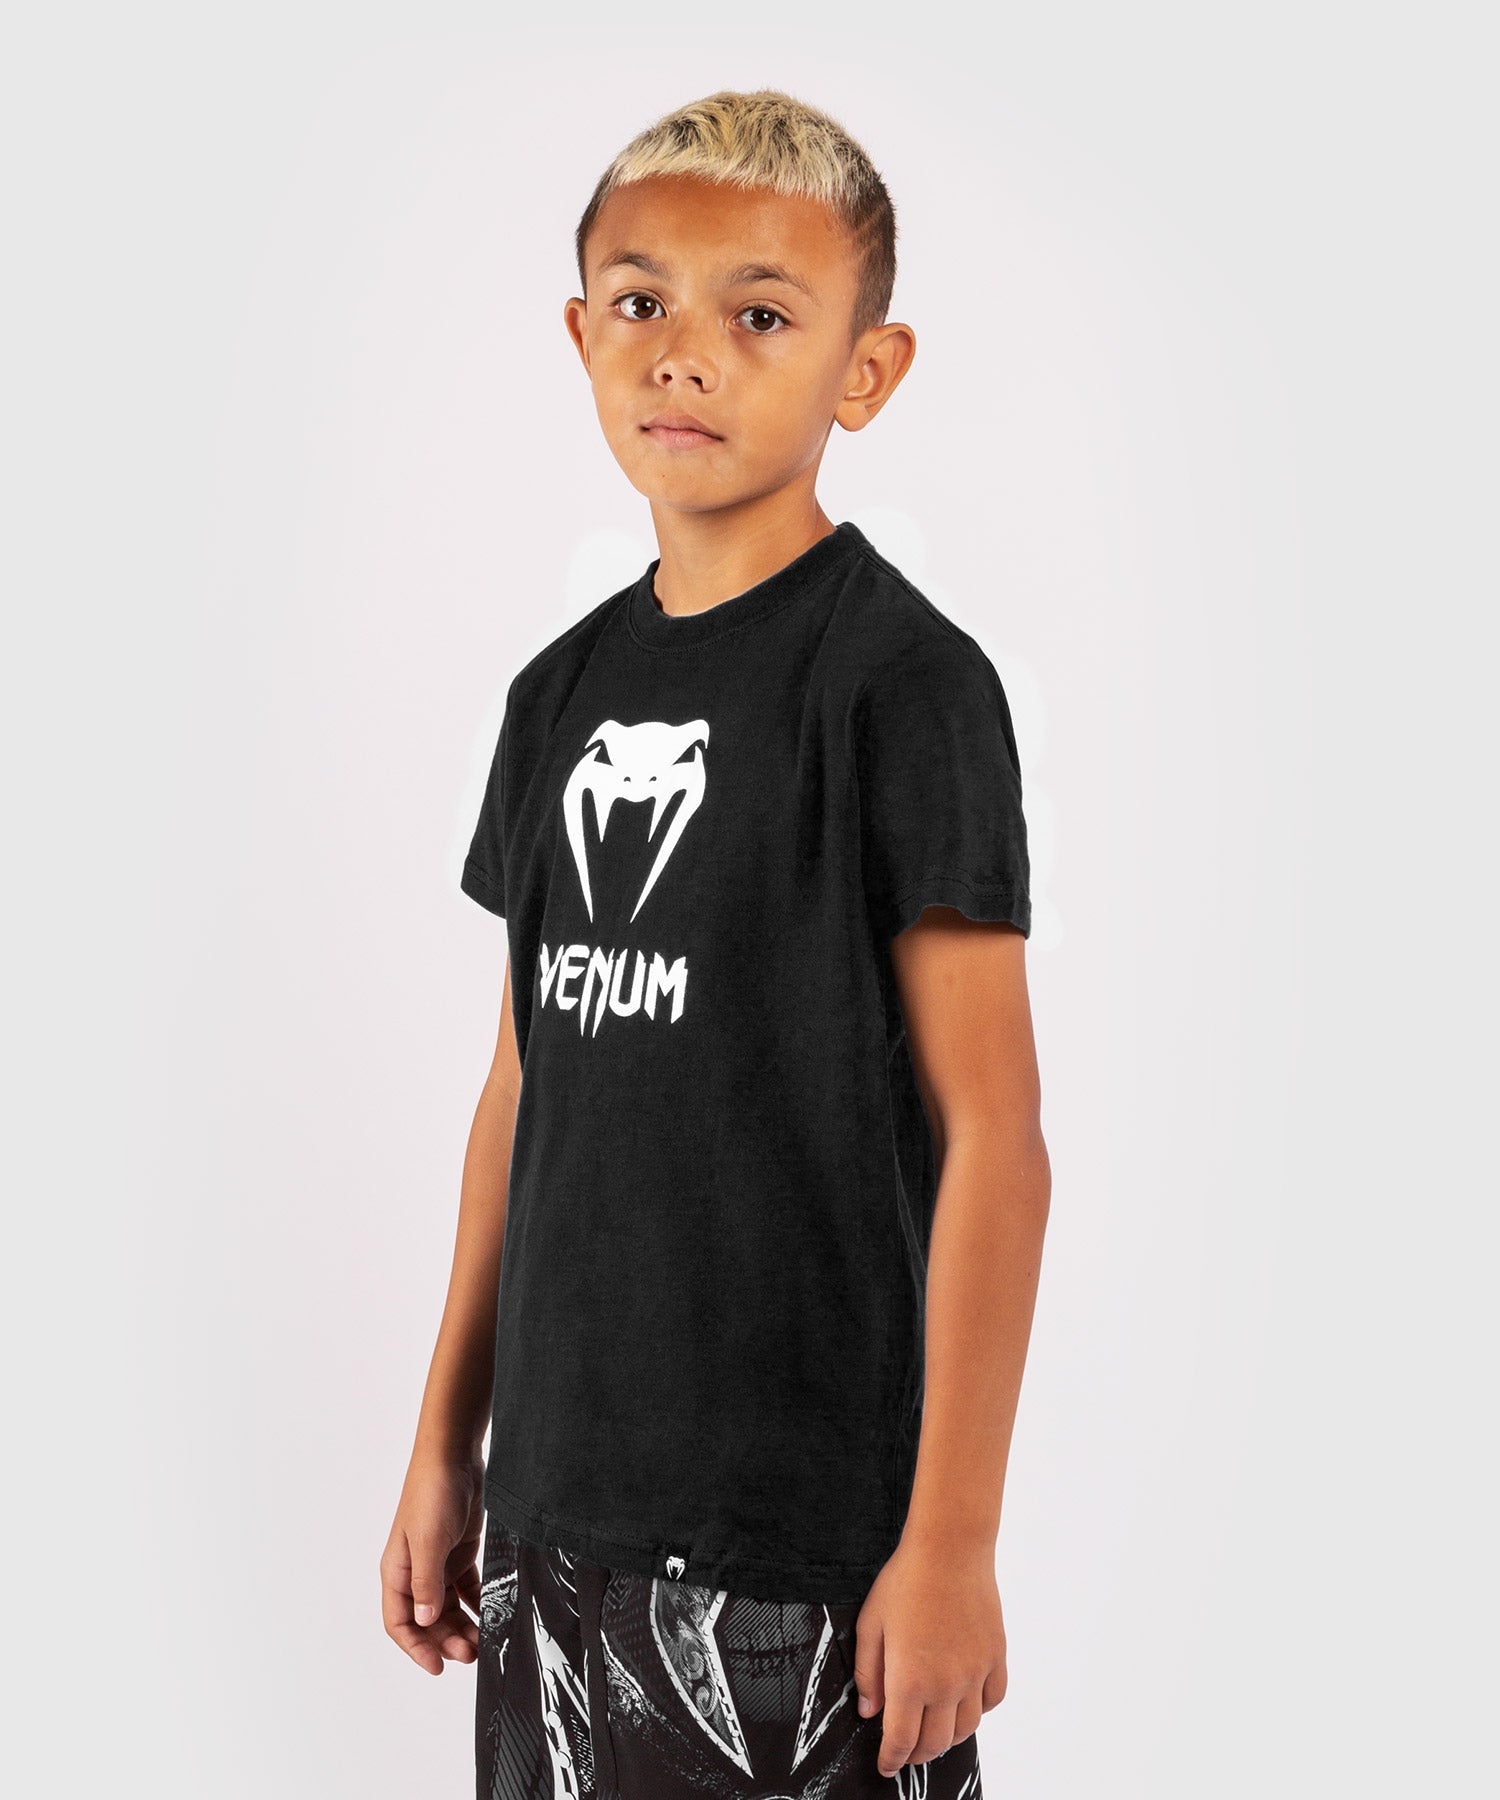 Kids T-shirt Asia Venum Venum - Black - Classic -